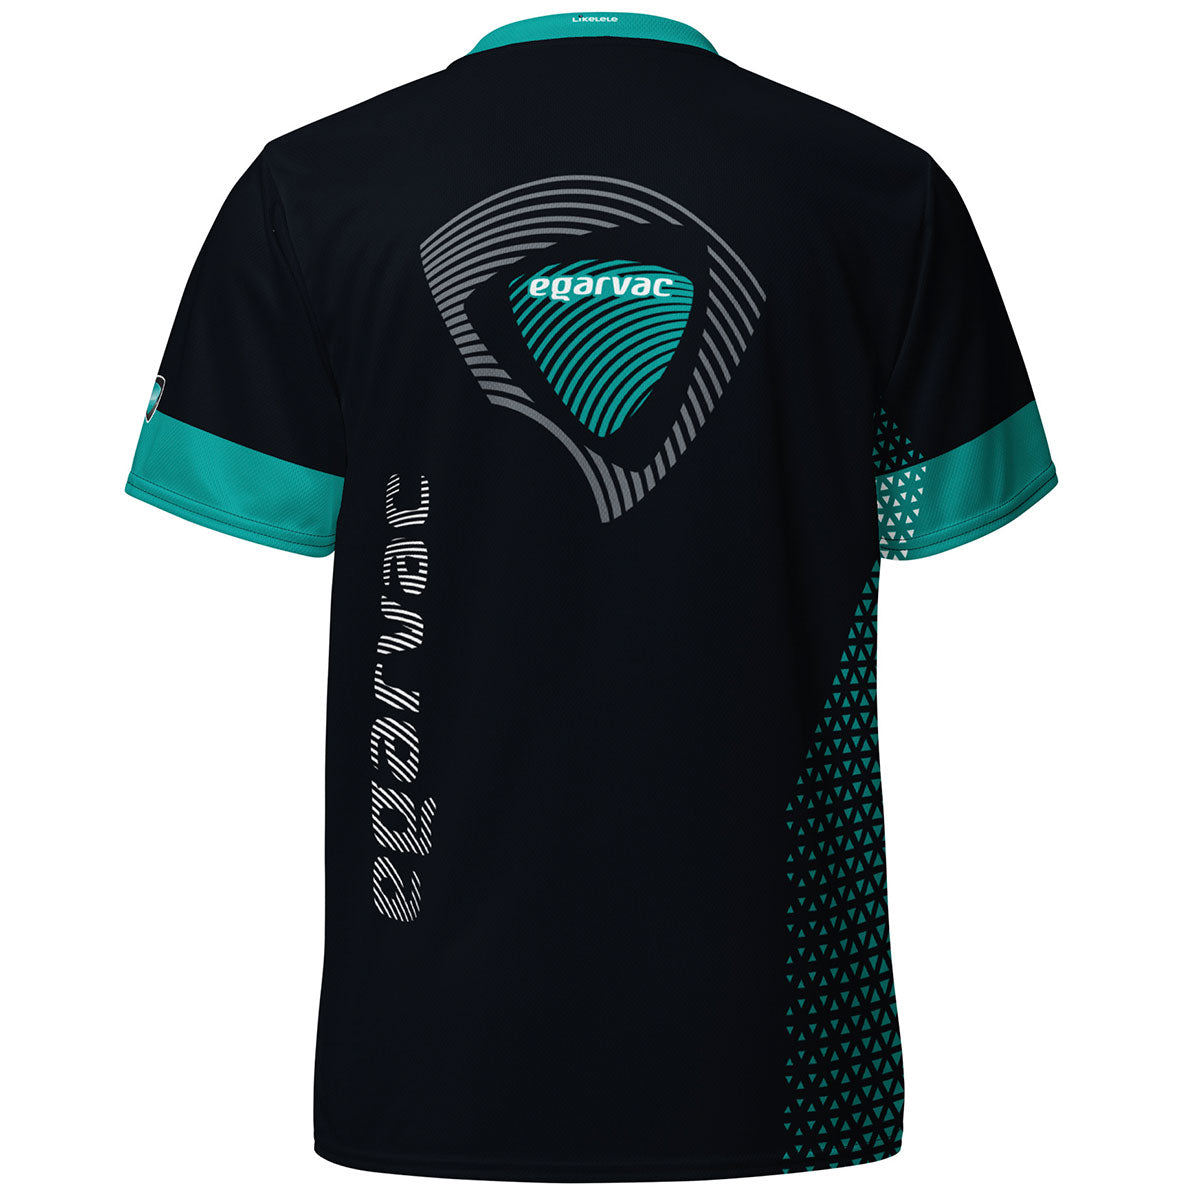 EGARVAC · Camiseta deportiva m/corta·Unisex · Premium·Full Print-301x4ipi